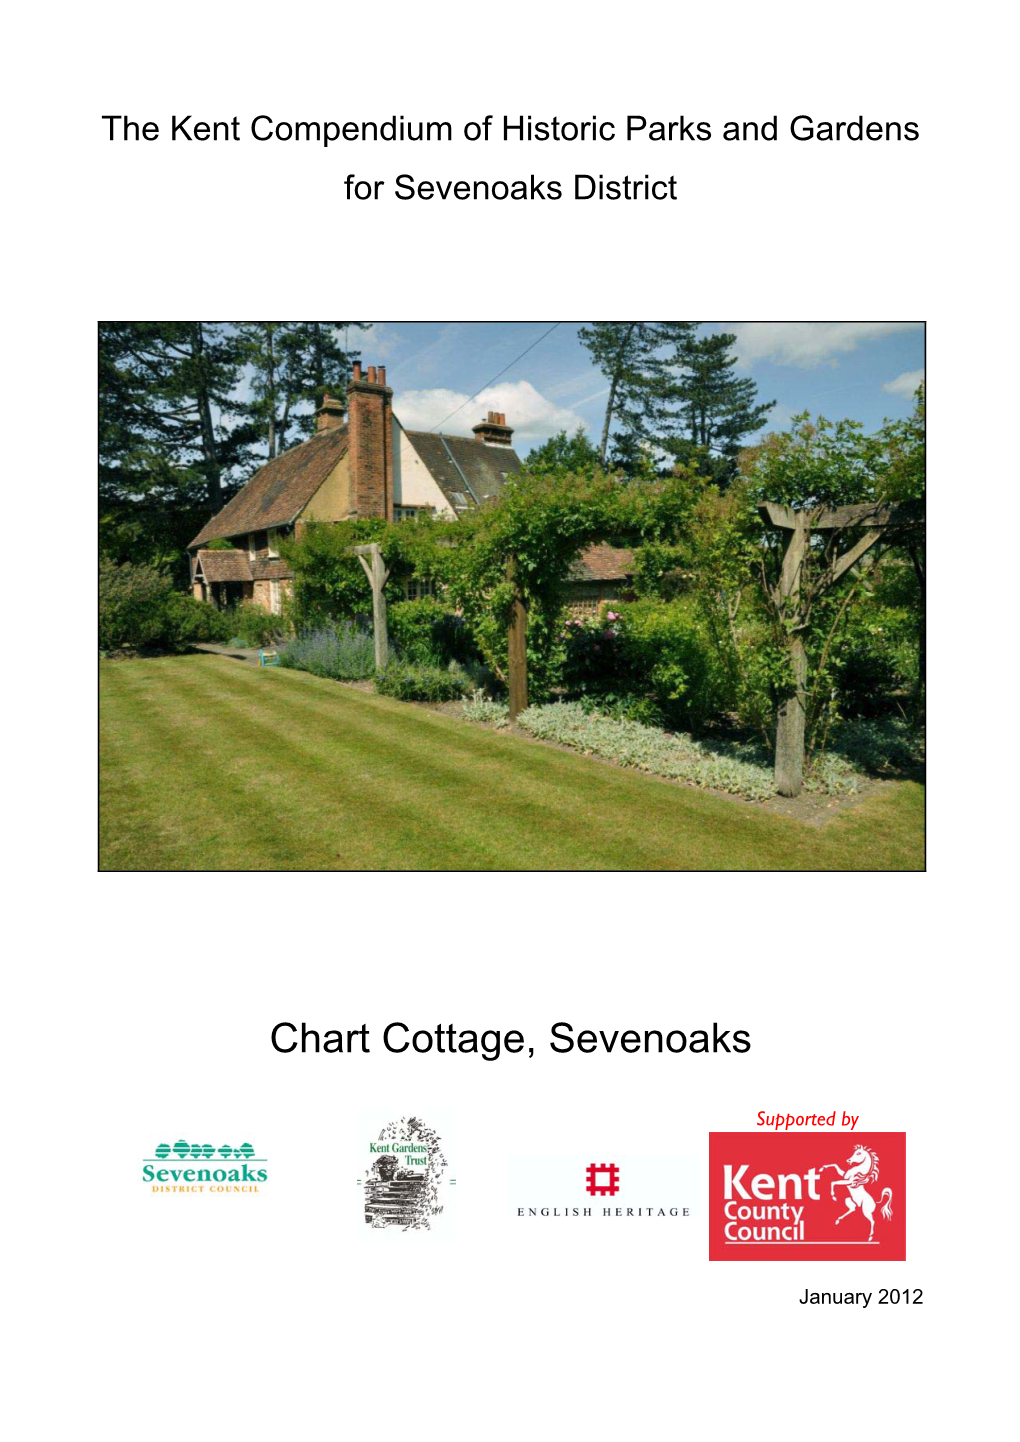 Chart Cottage, Sevenoaks